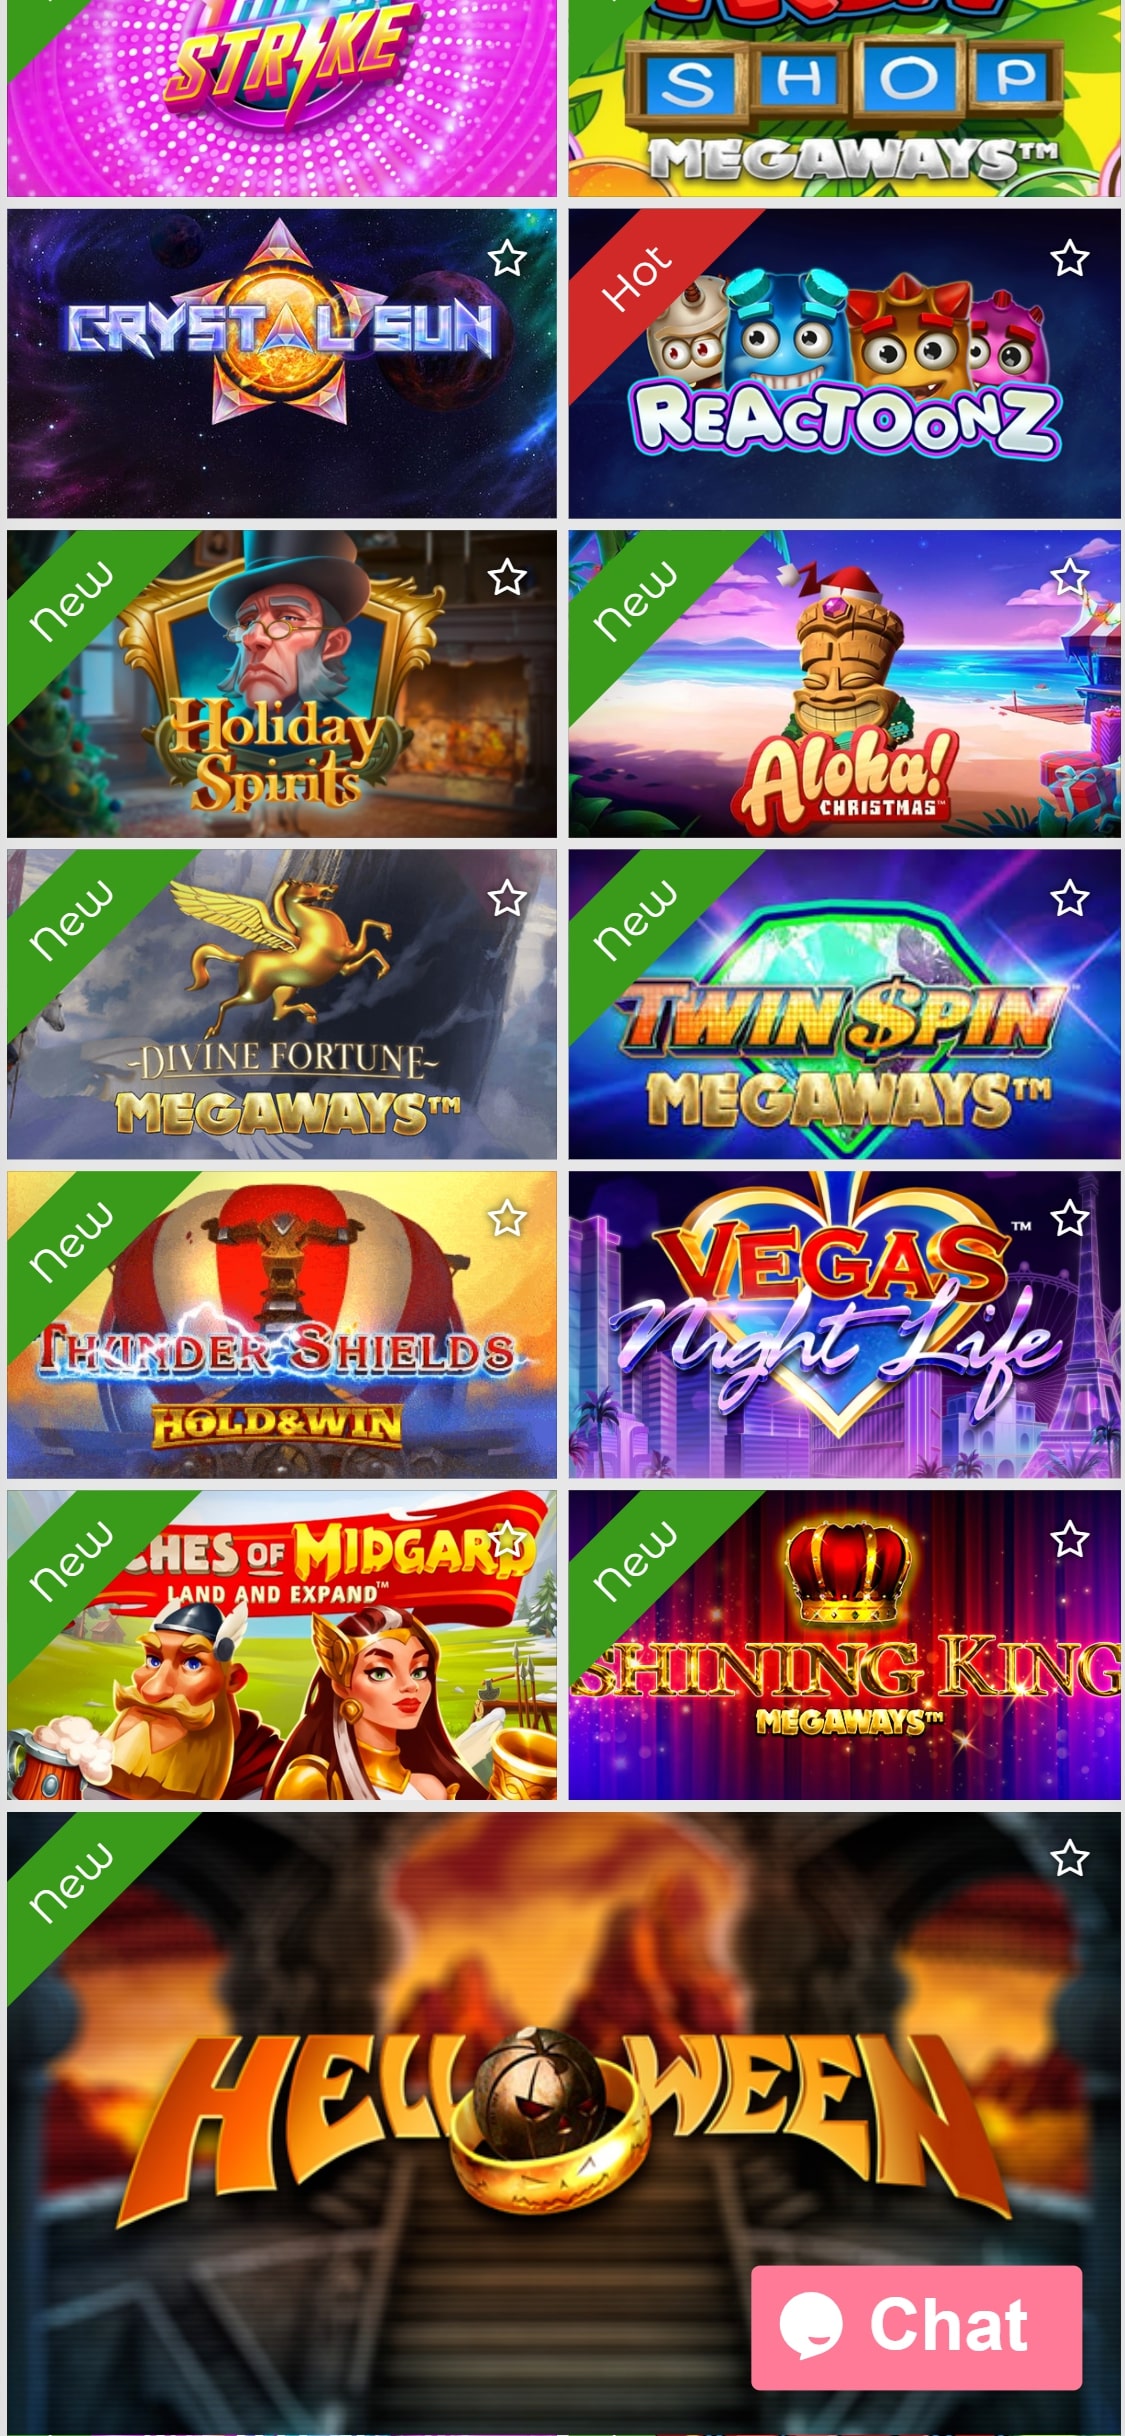 SlottoJAM Casino Mobile Games Review